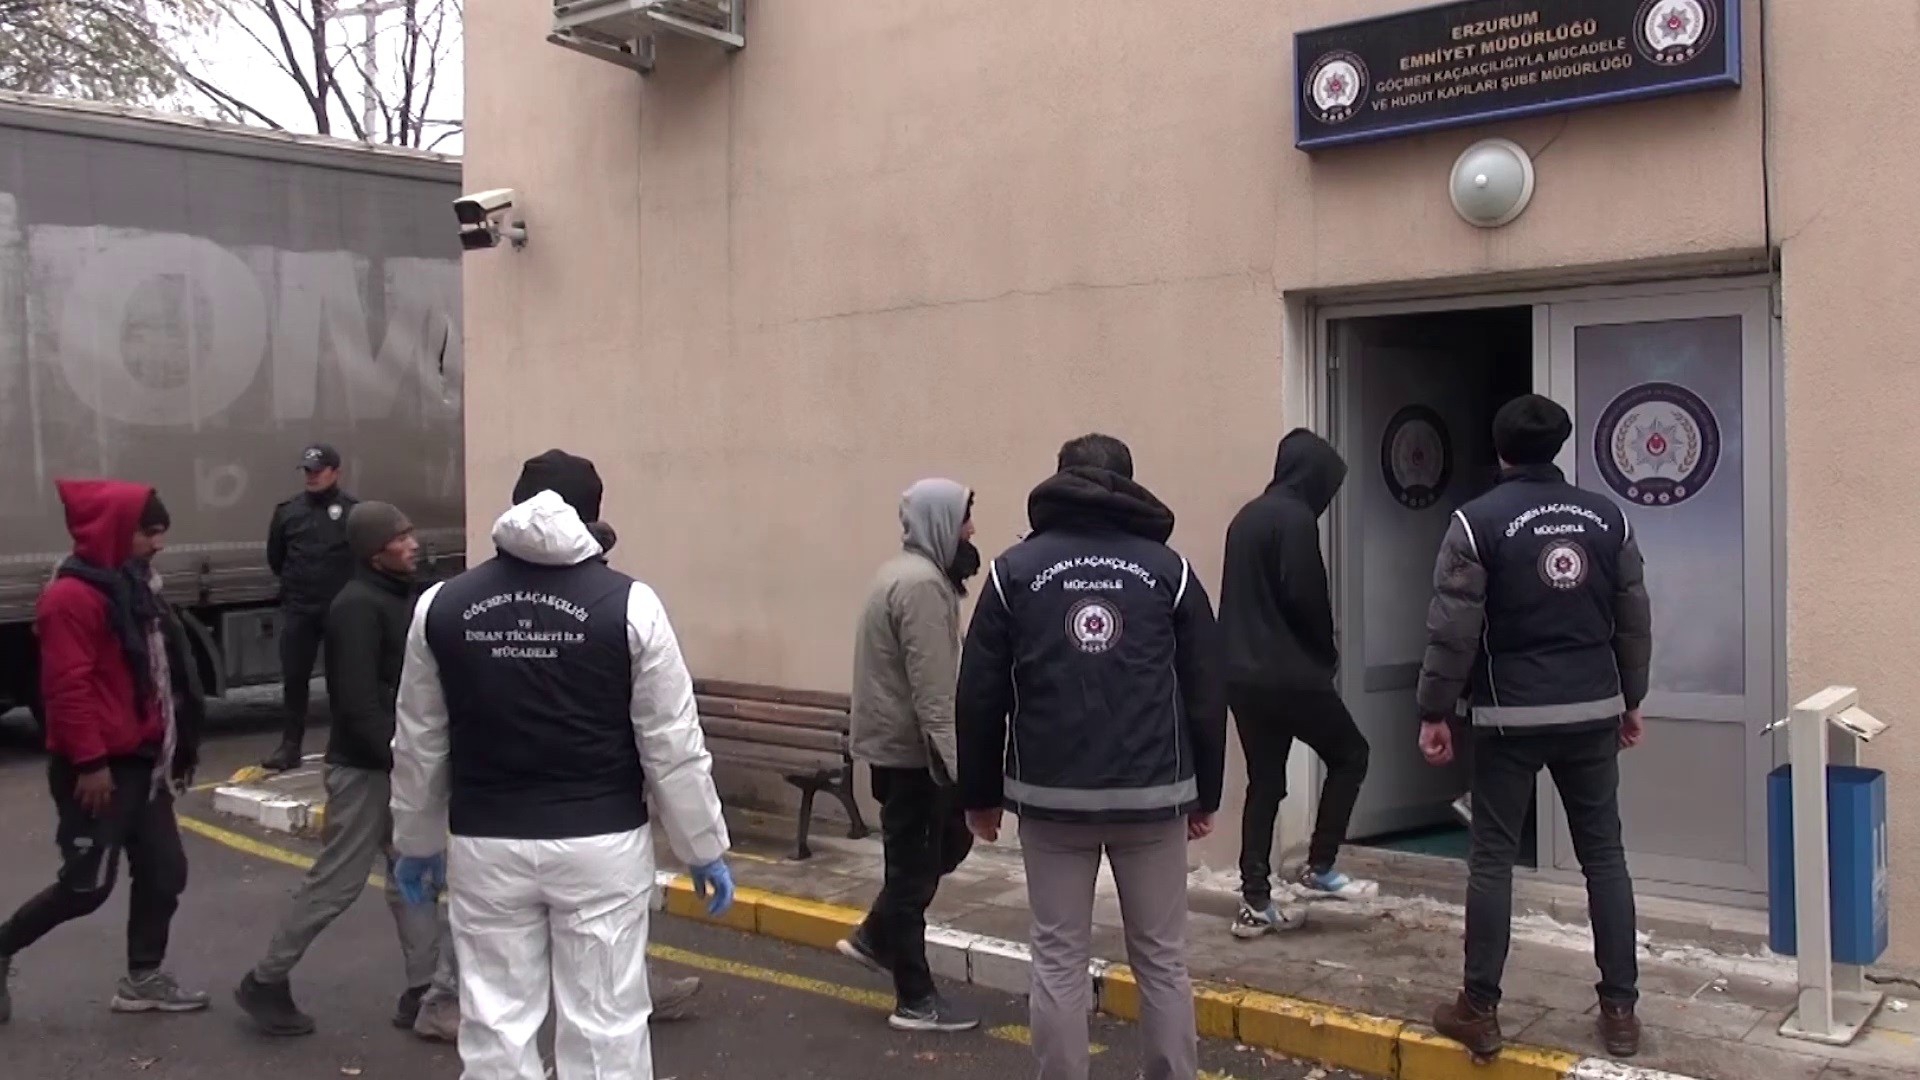 Erzurum’da tır dorsesinde 56'sı çocuk 133 kaçak göçmen yakalandı